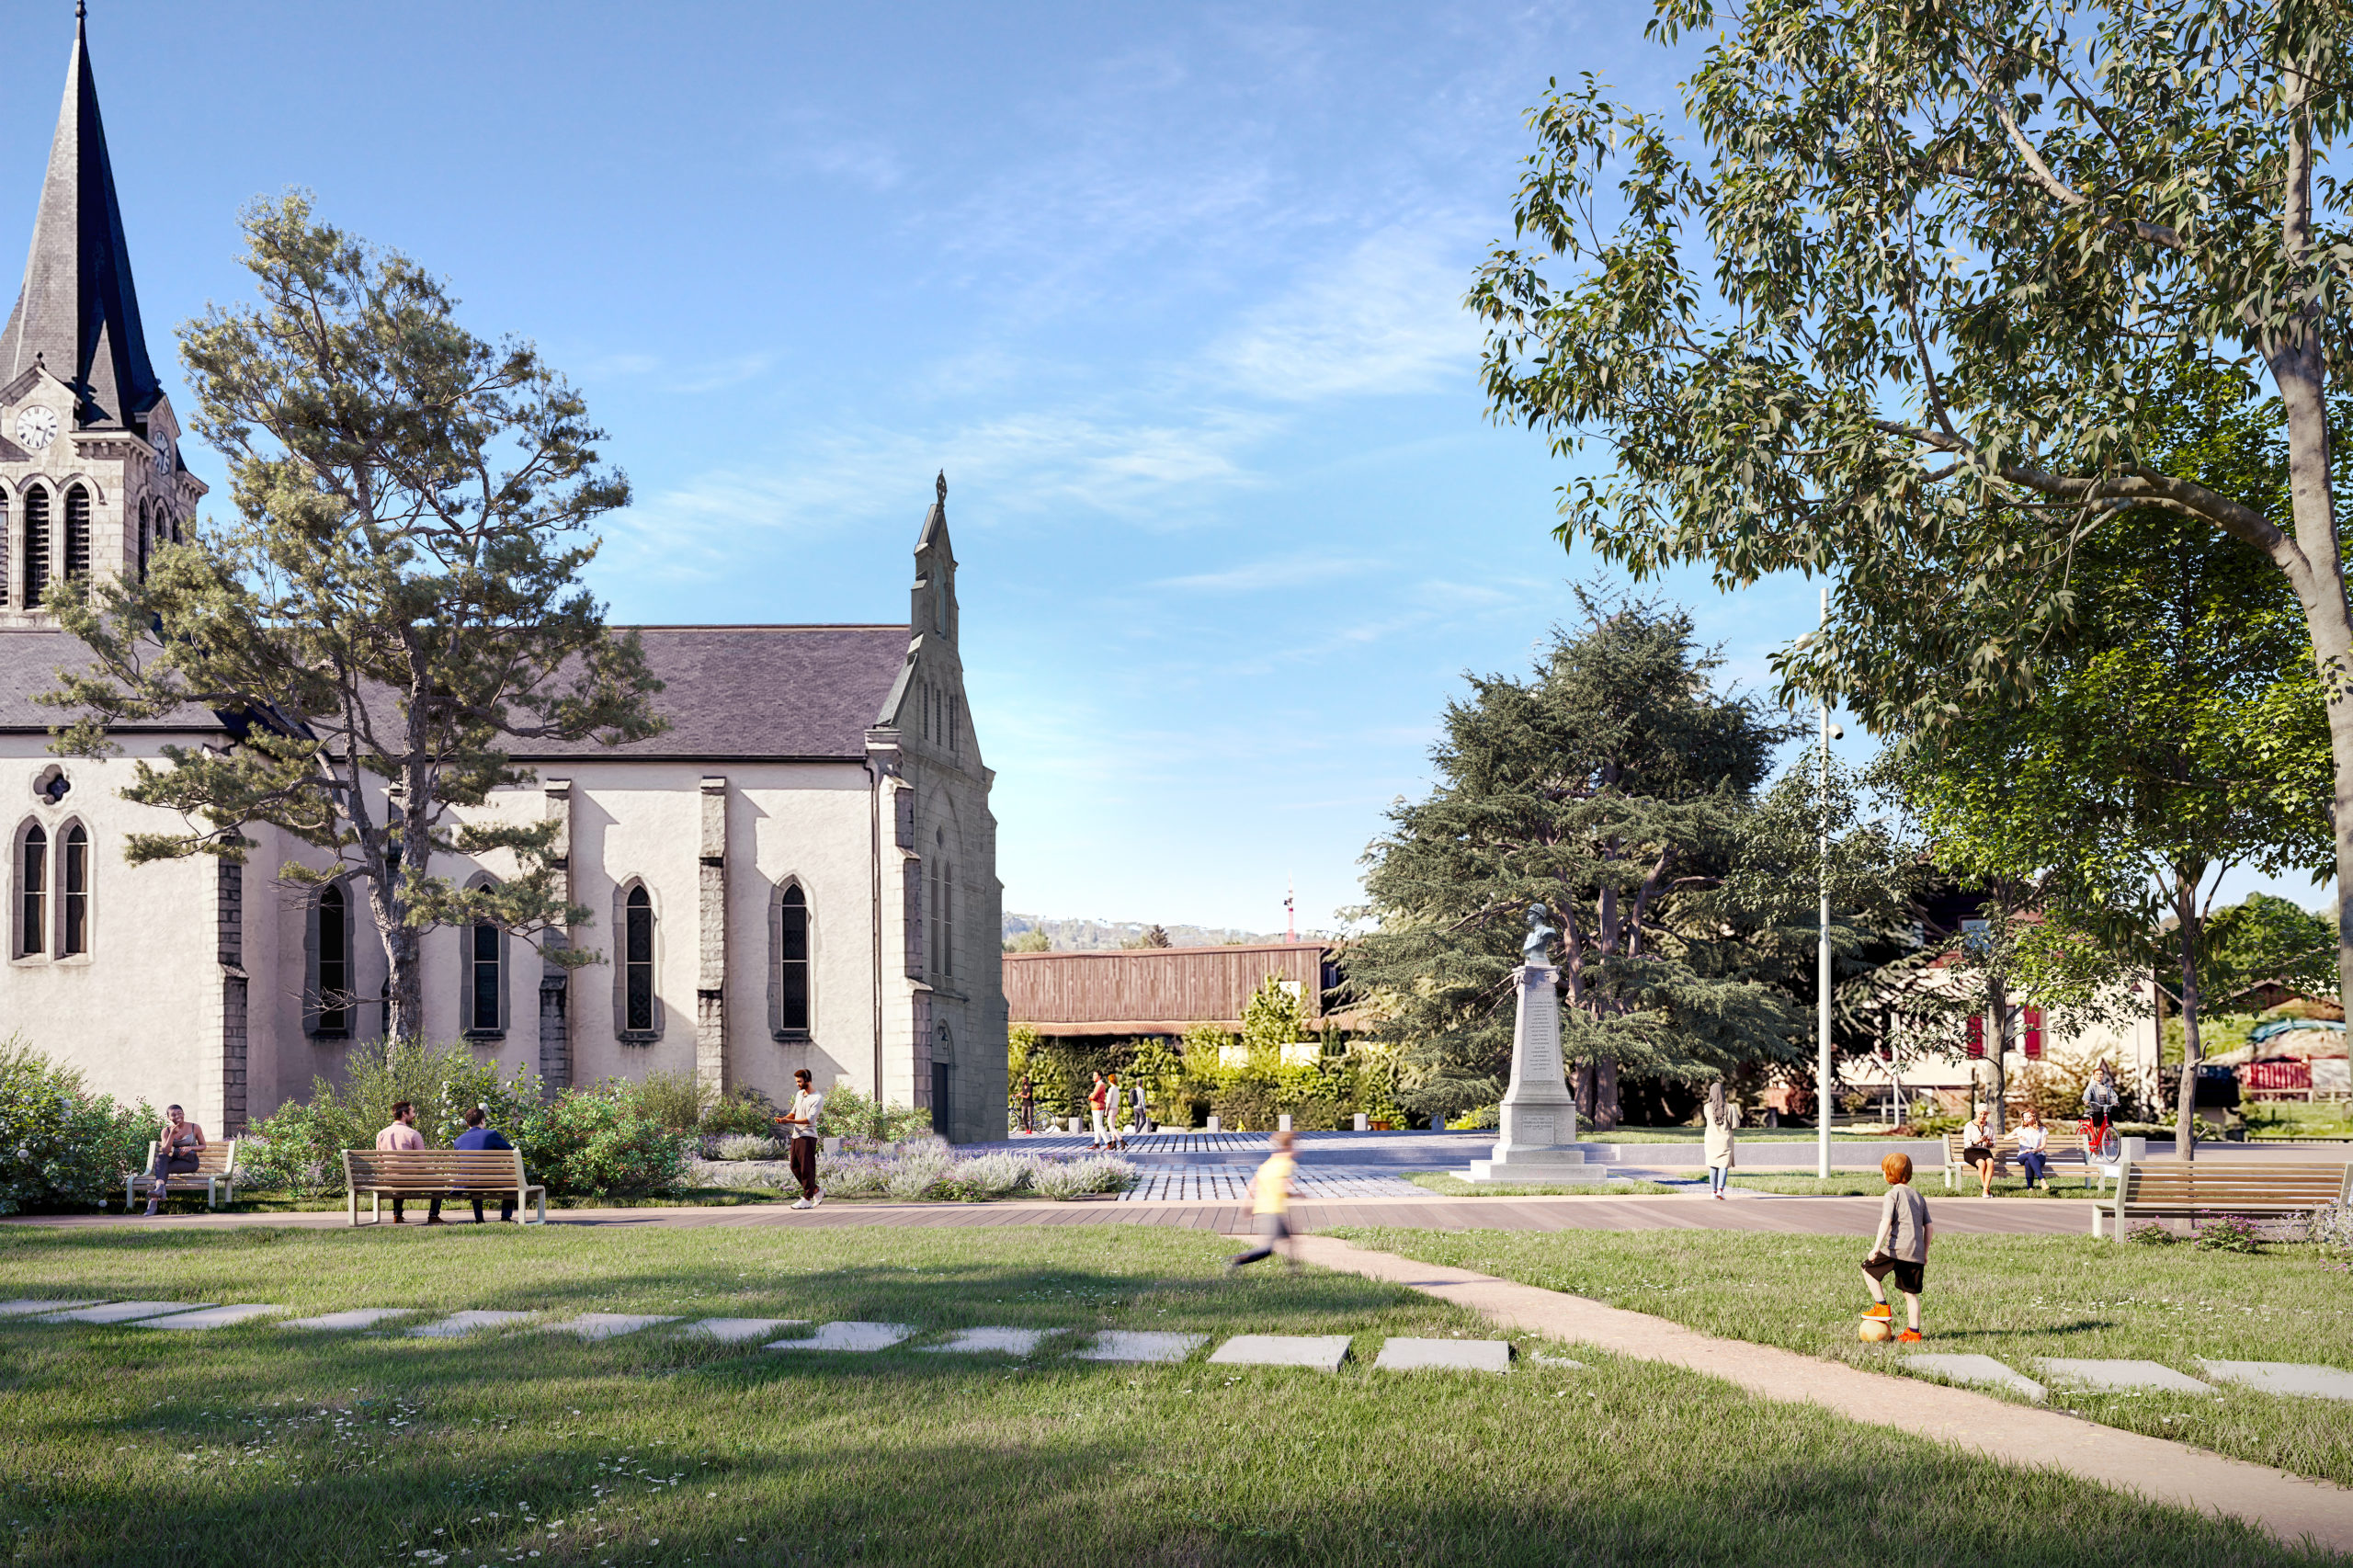 LJN - Paysagiste concepteur - Haute Savoie - Amancy - Centre bourg - Perspective - Espace public - Parc